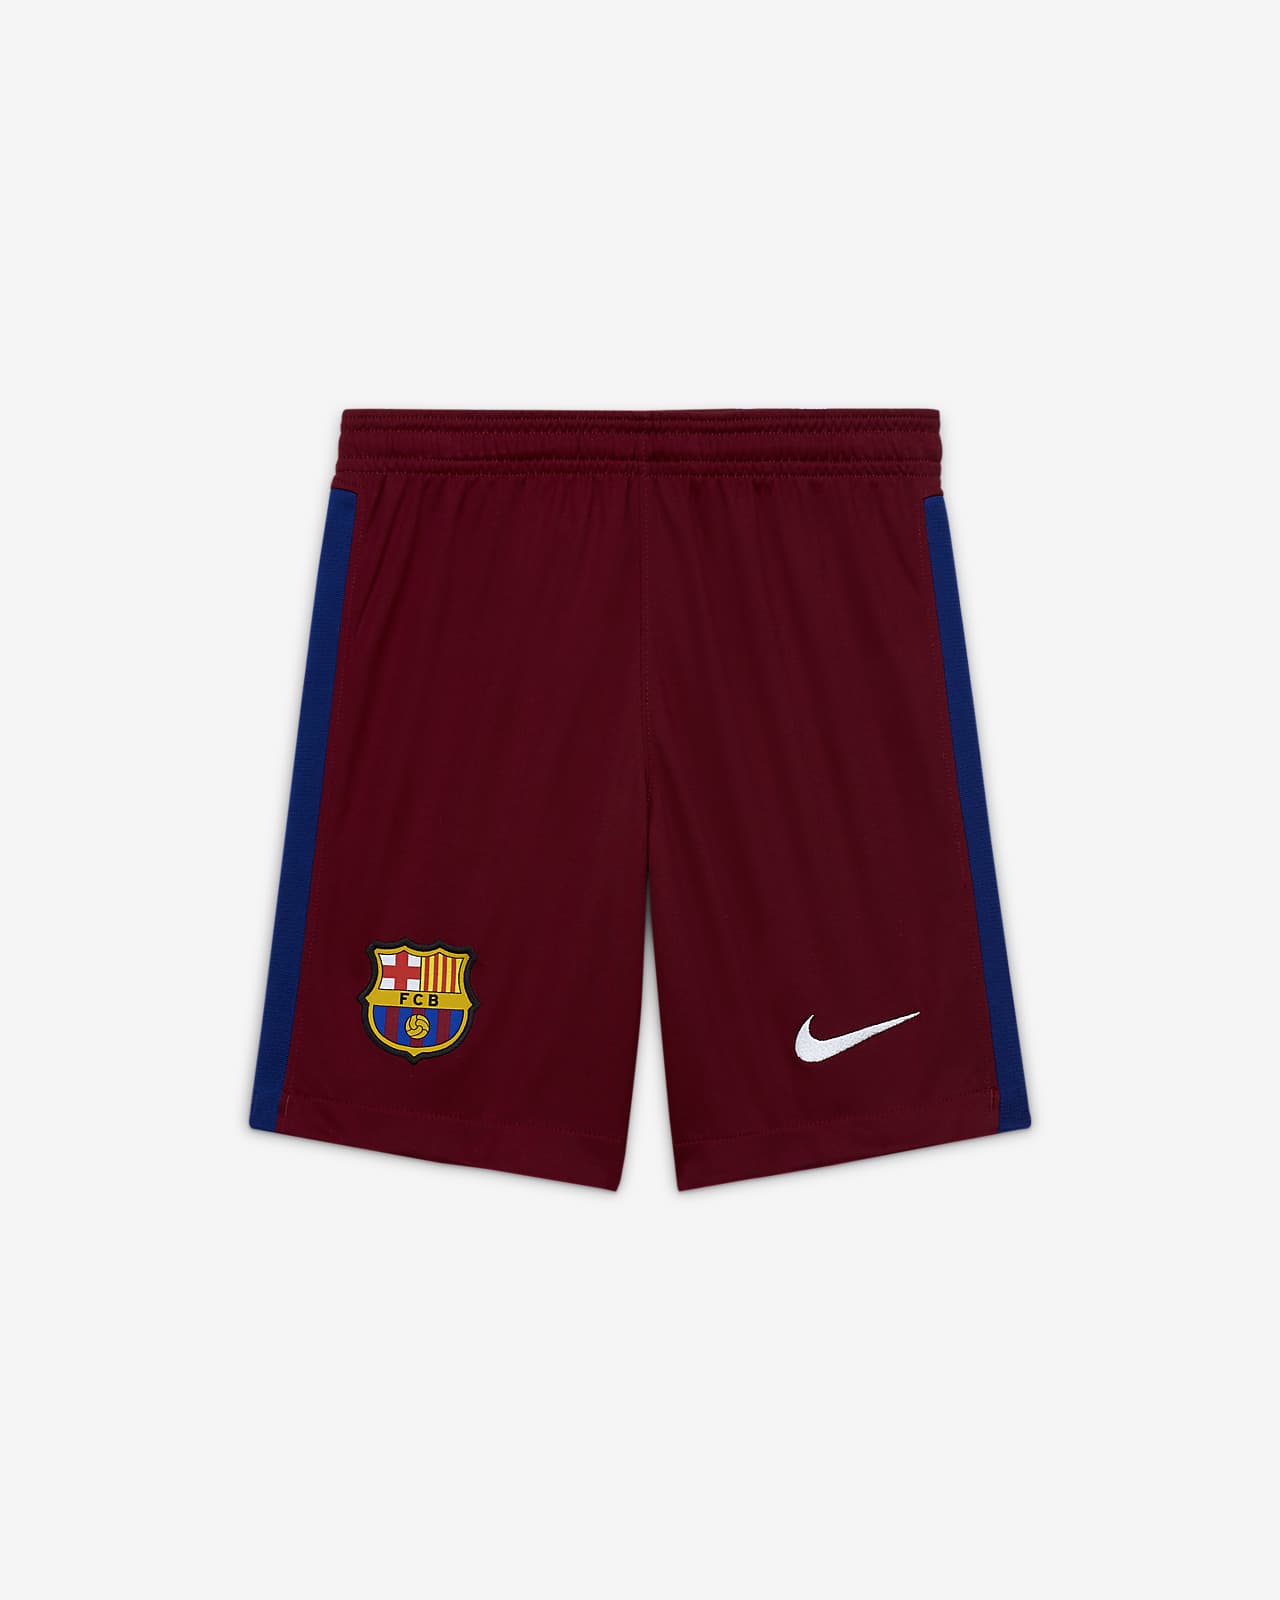 barcelona shorts nike